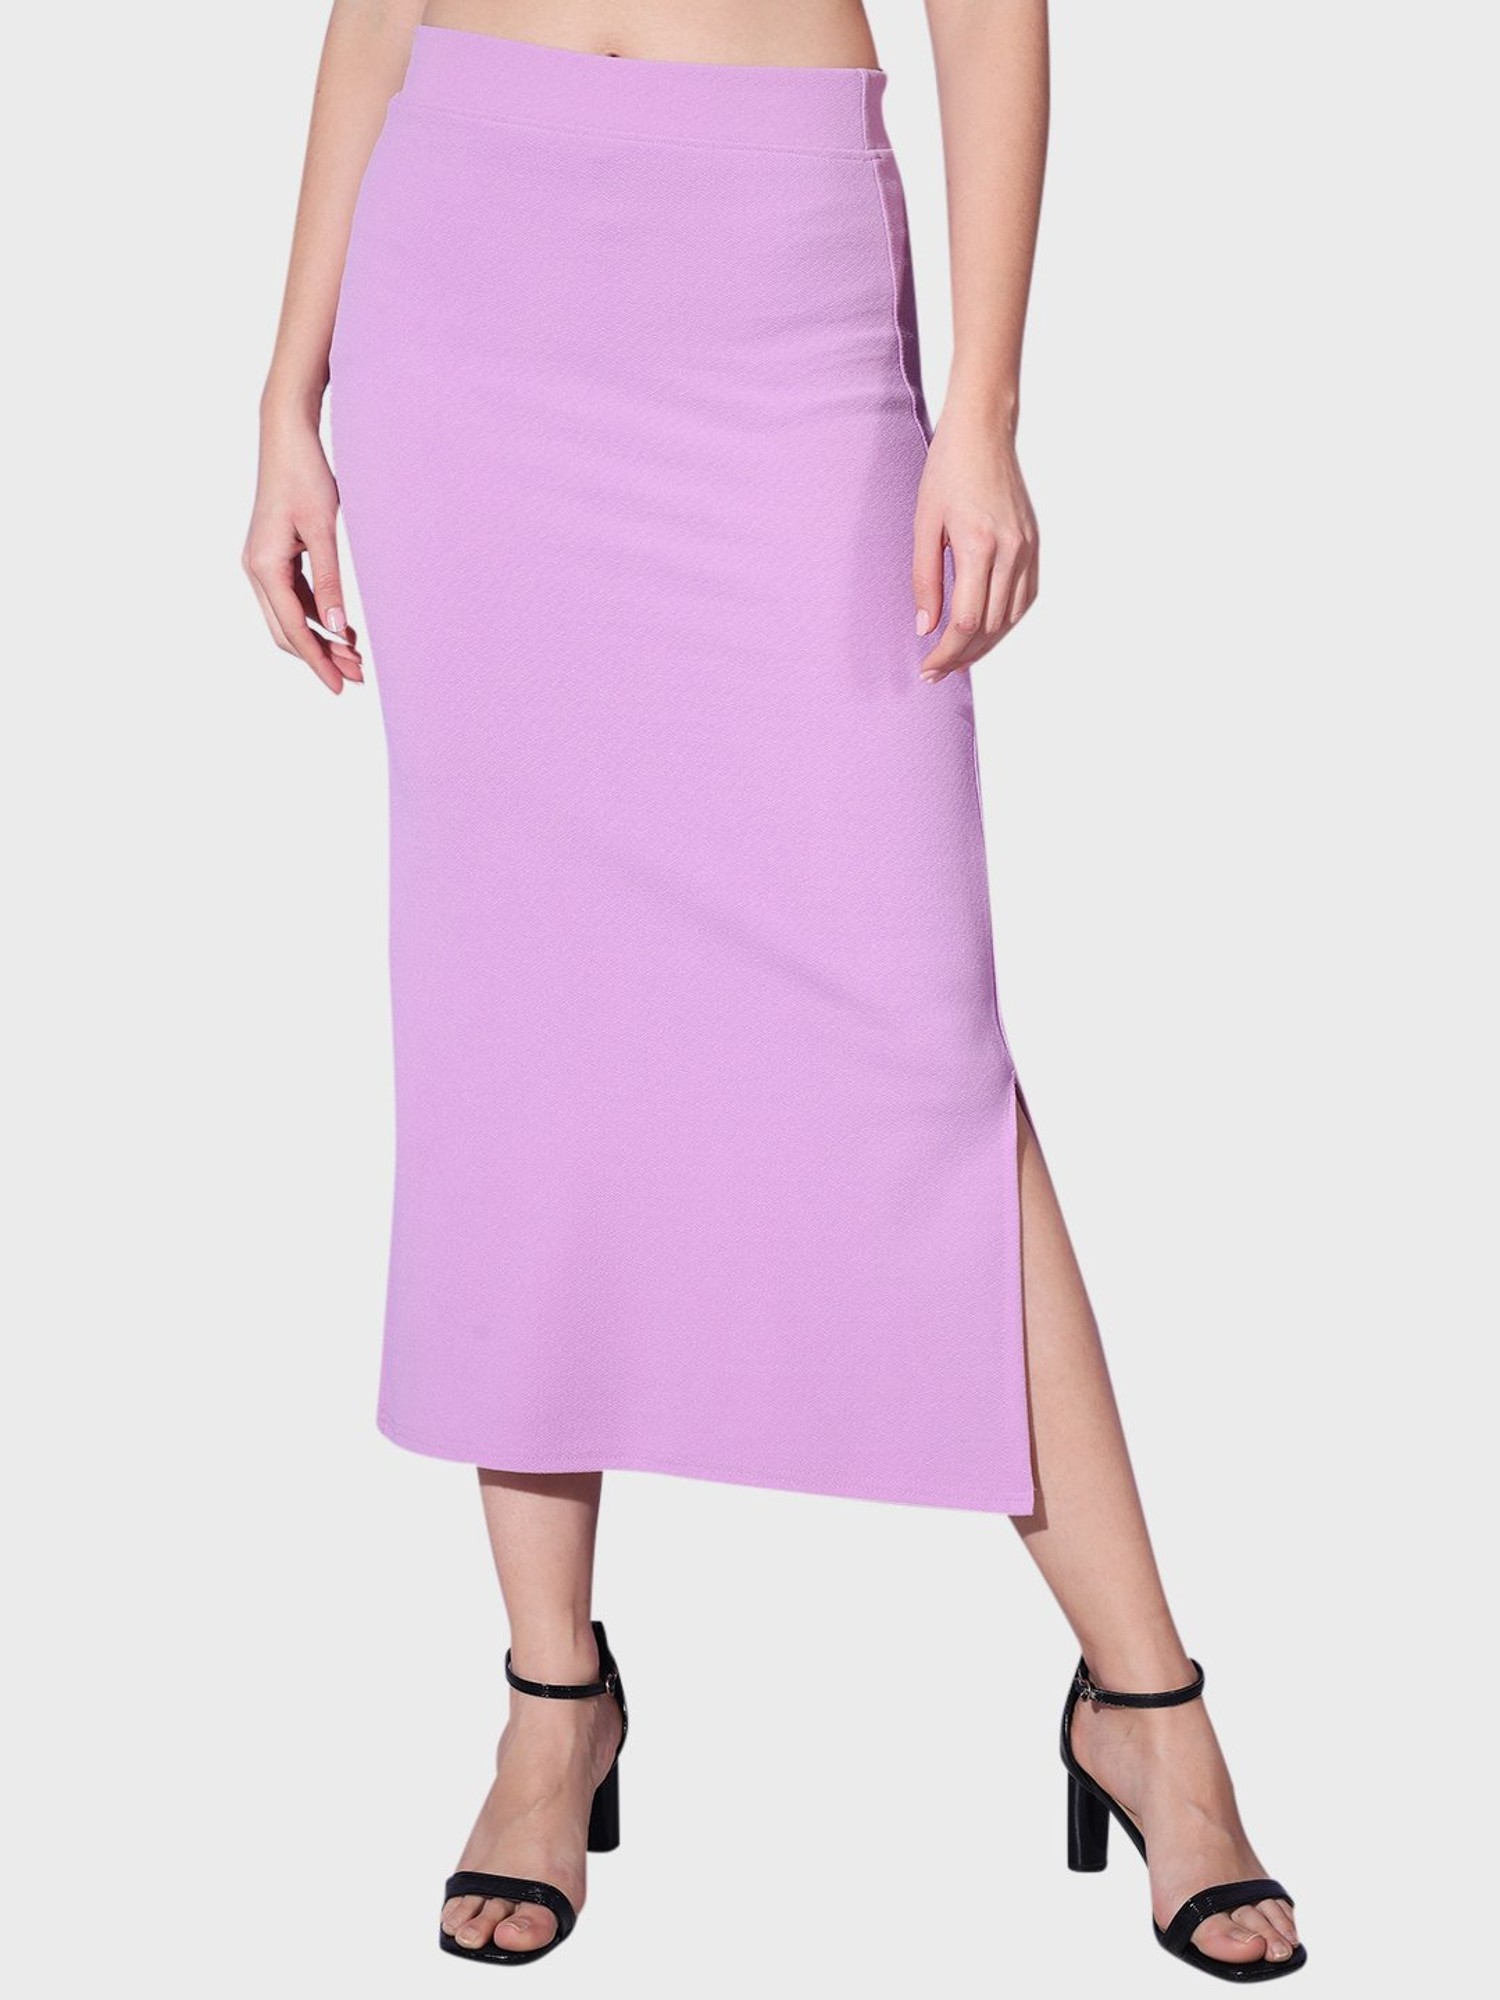 Buy Women Pencil Skirt, Yellow/purple Skirt, Fitted Skirt, Classic Skirt,  Formal Skirt, Business Skirt, High Waisted Skirt, Casual Skirt Online in  India - Etsy